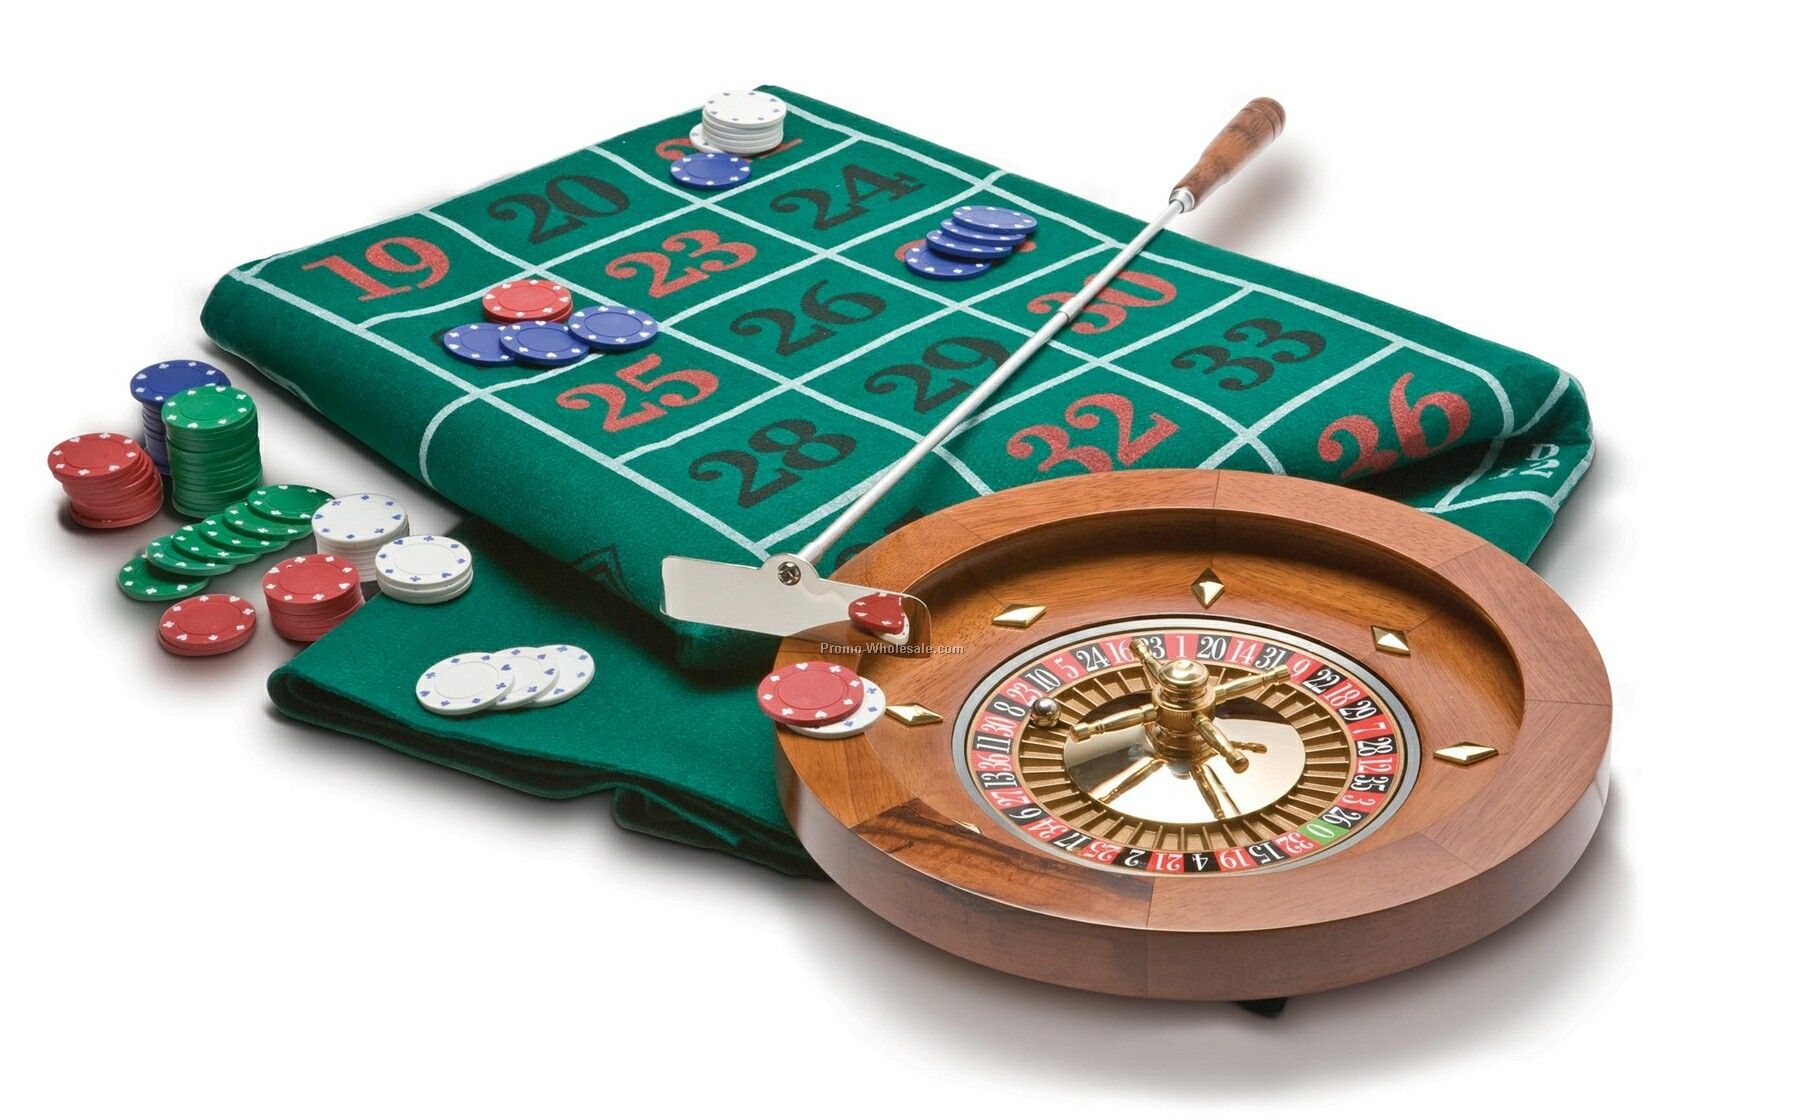 Roulette Grand Casino In Carton Box